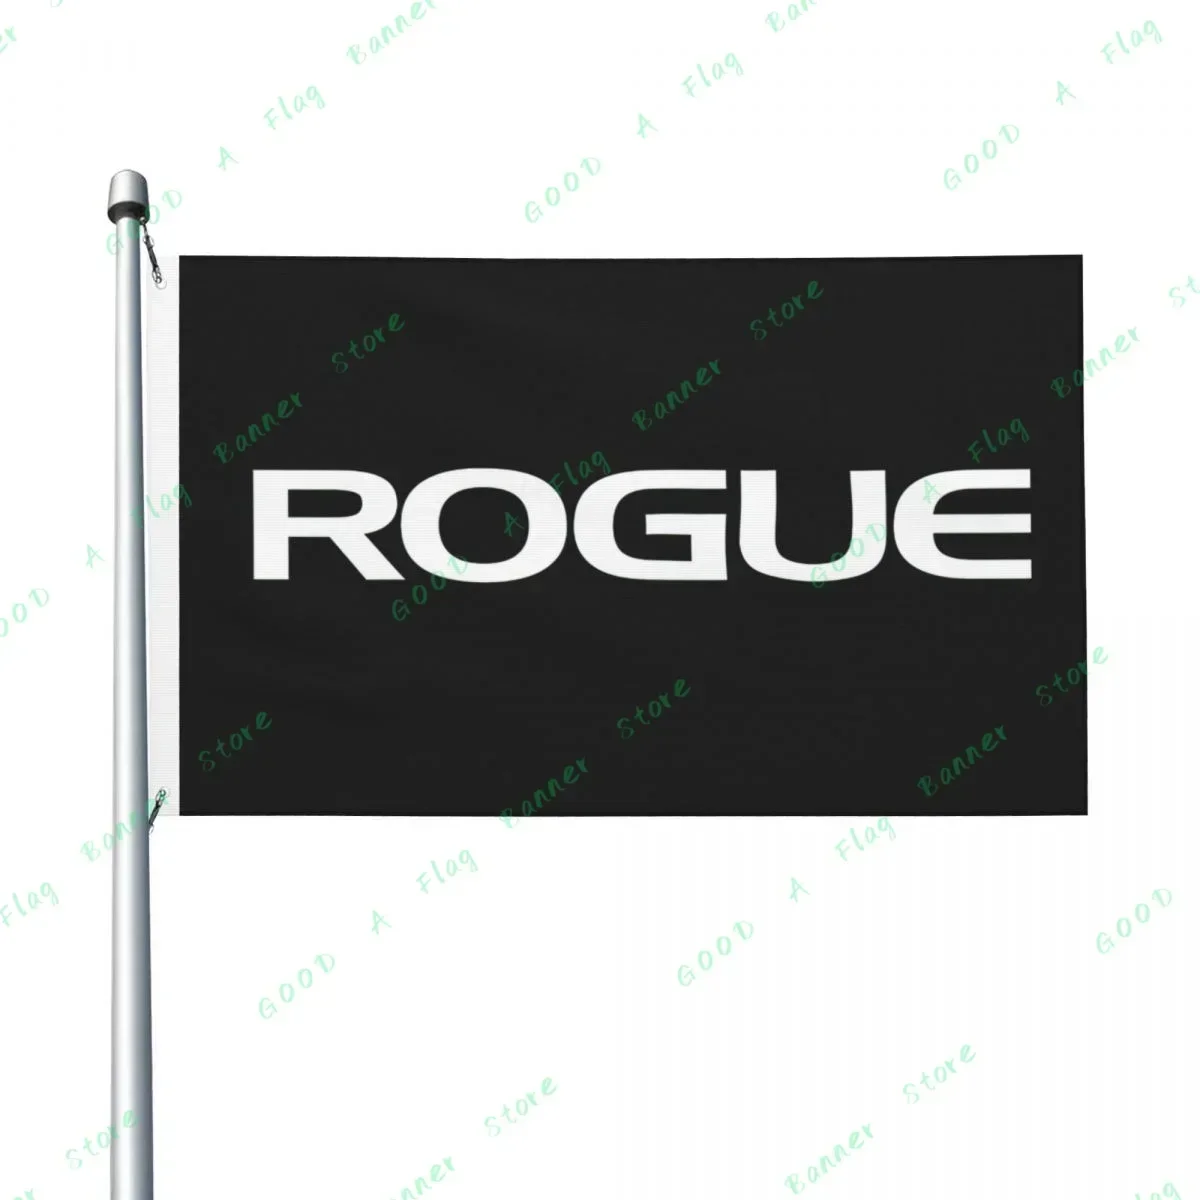 أعلام لتزيين الجسم في صالة الألعاب الرياضية ، لافتة العلم ، تكون قوية من أعذارك ، 3 × 5 قدم ، 3 × 5 قدم